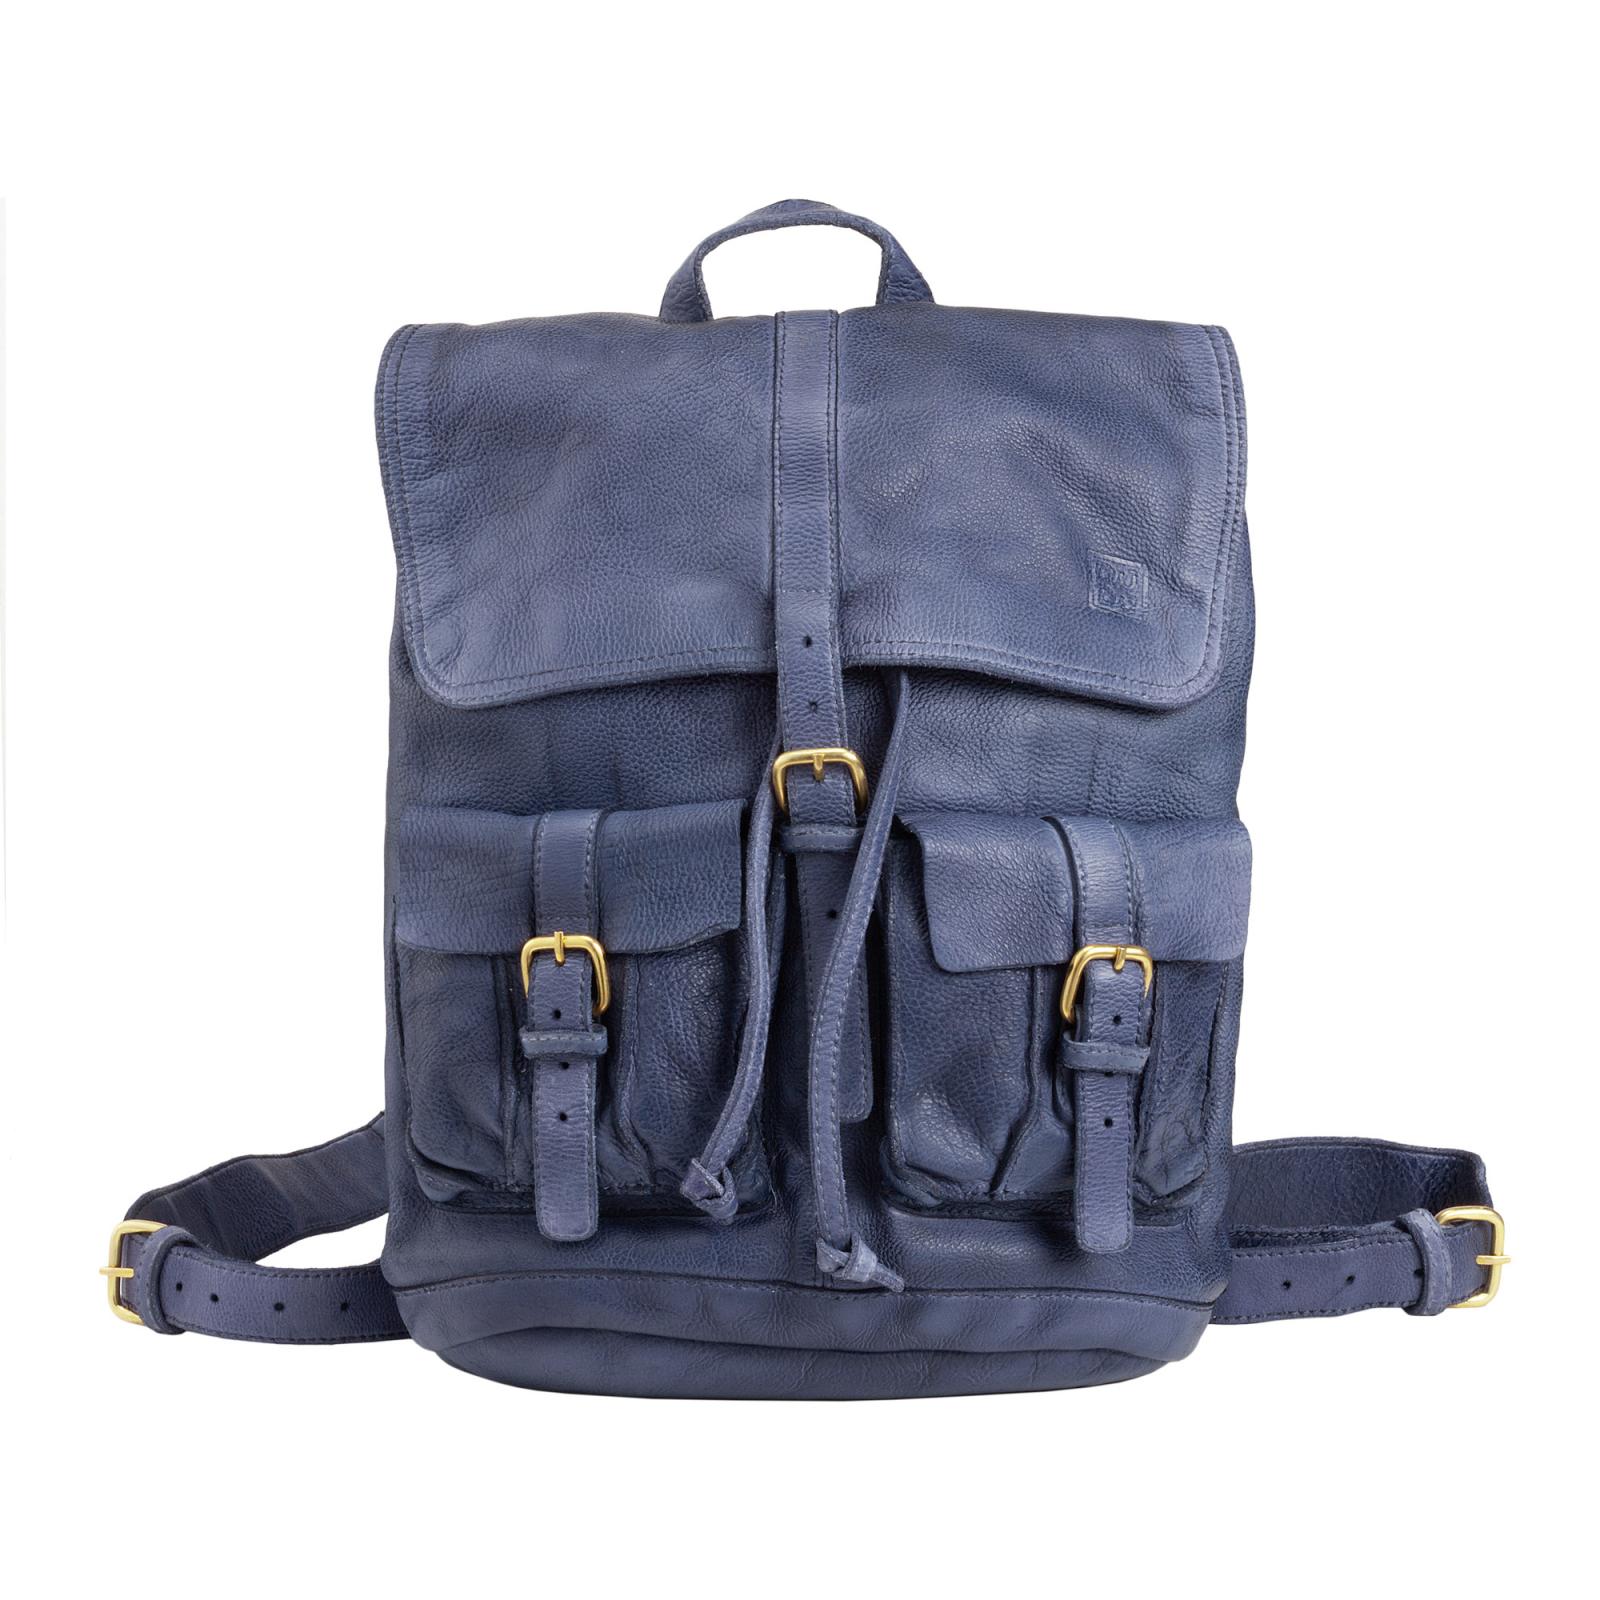 Borse  Uomo  Timeless - Backpack  - Indigo Blue